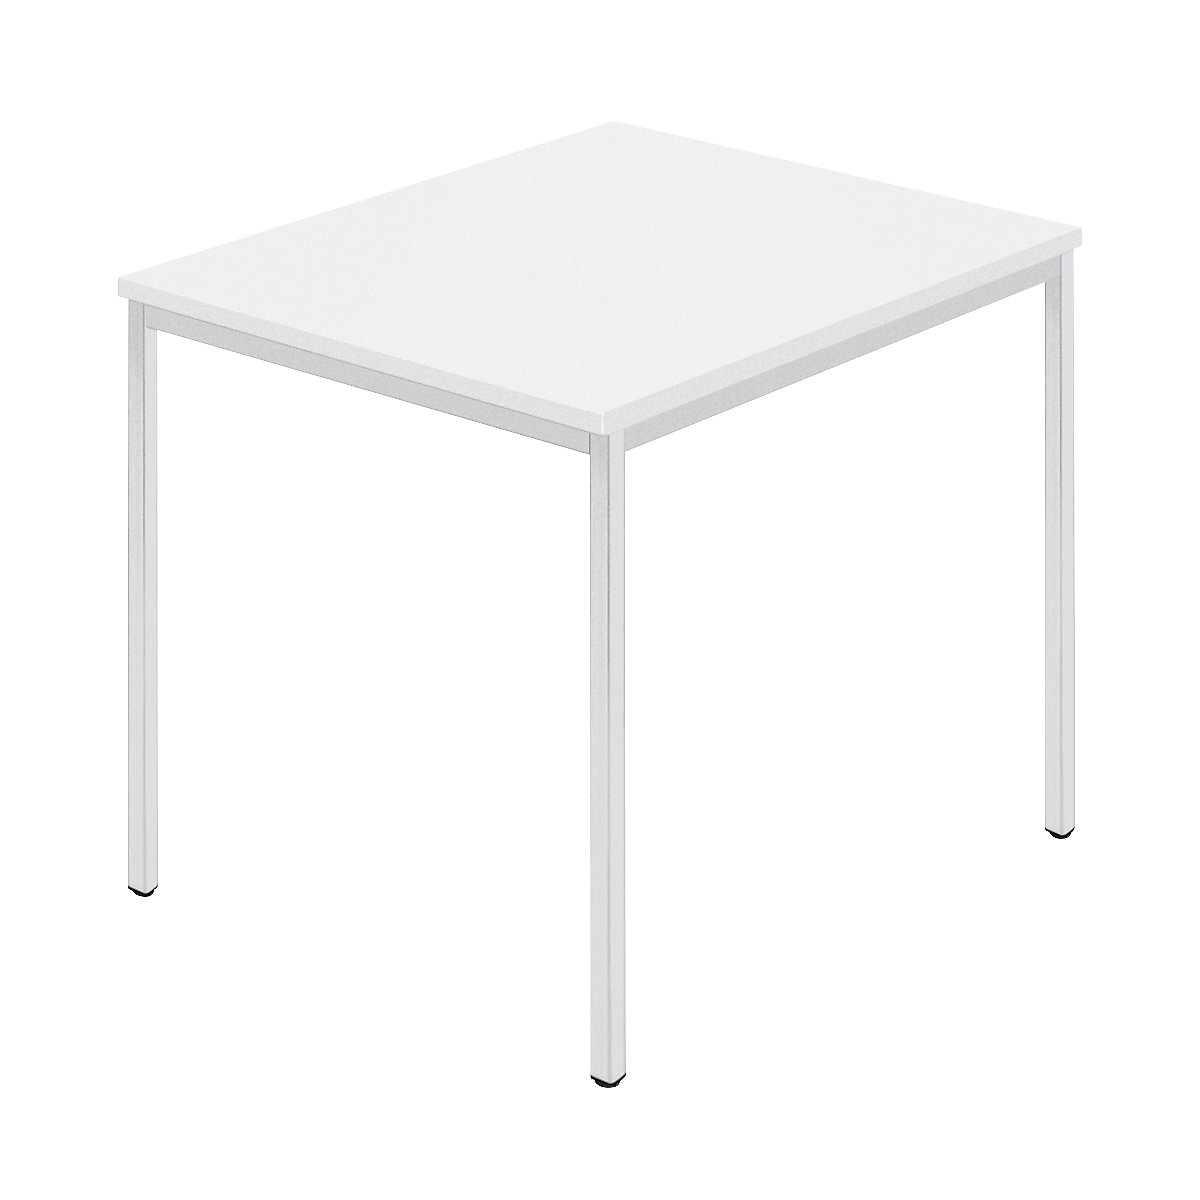 Stół prostokątny, czworokątna rurka lakierowana, szer. x głęb. 800 x 800 mm, biały / szary-6